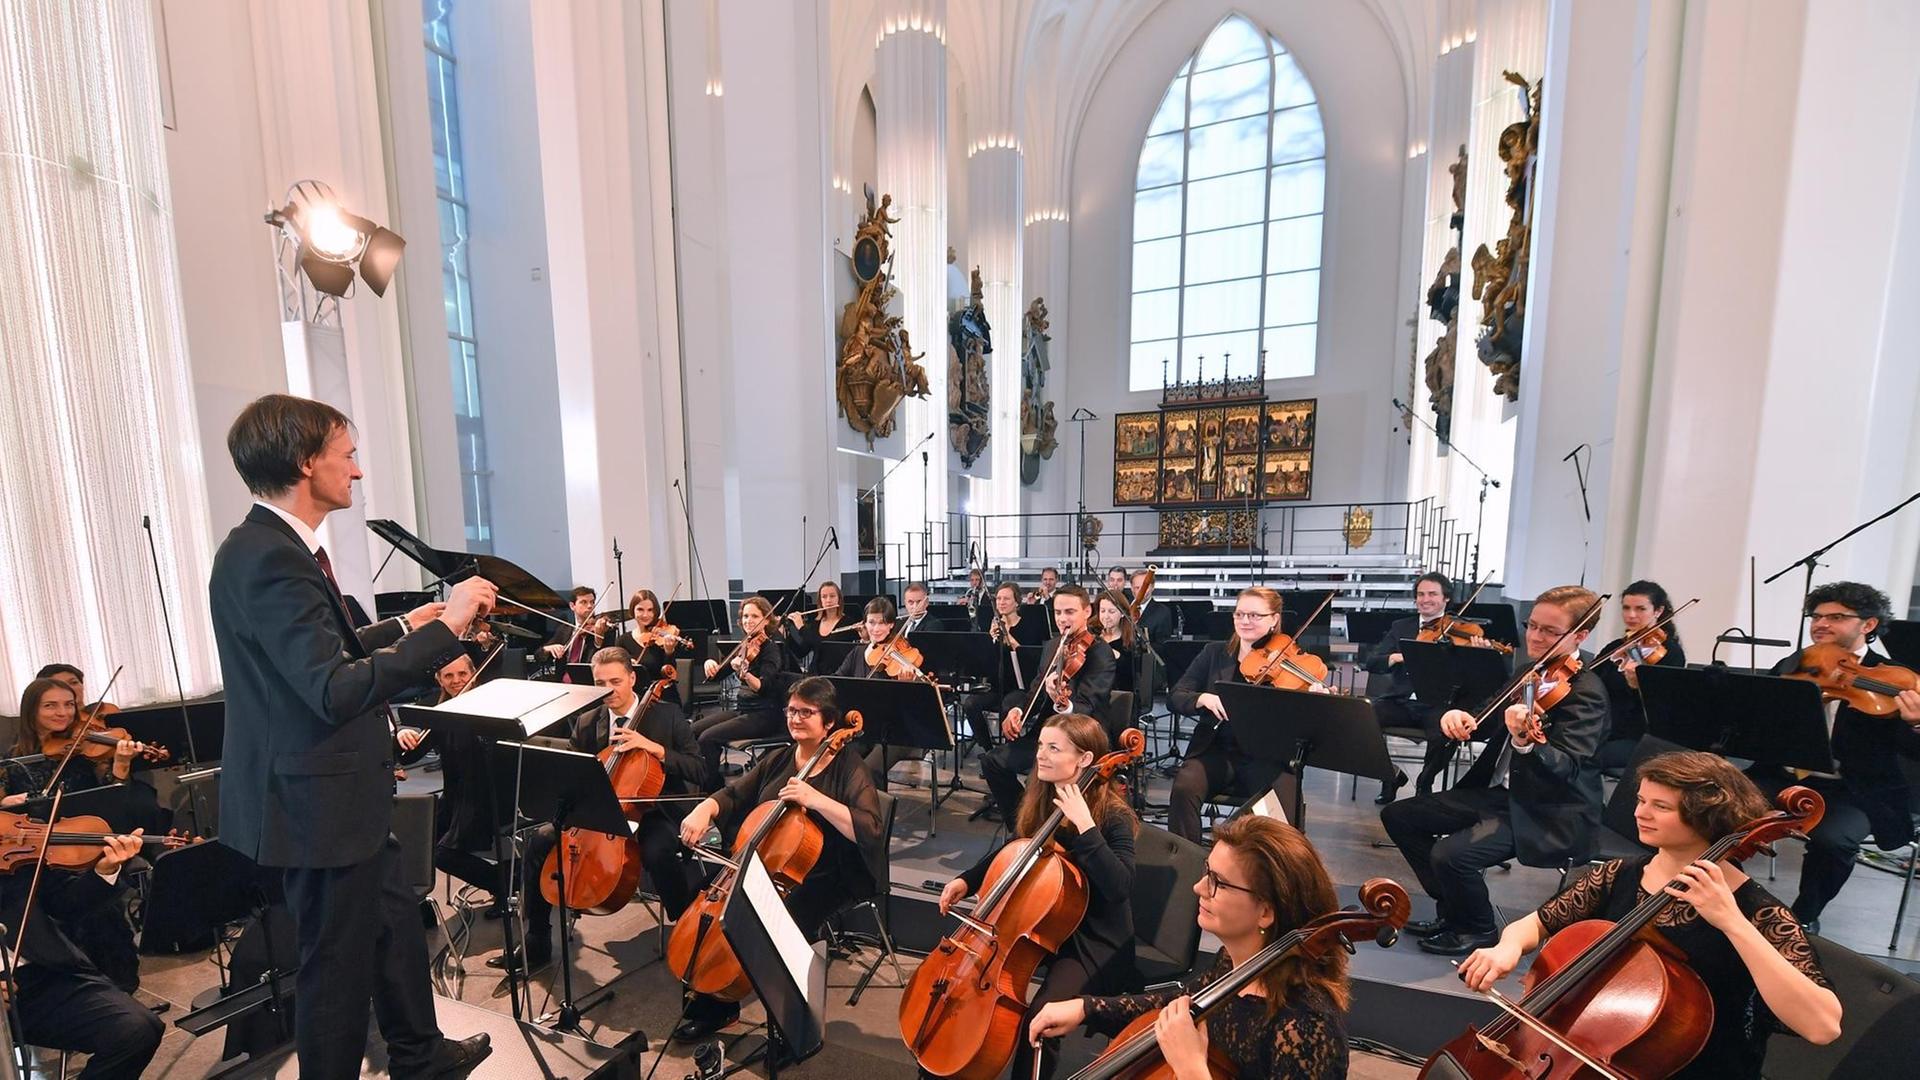 Das Orchester der Universität Leipzig spielt unter der Leitung von Universitätsmusikdirektor David Timm am 01.12.2017 auf dem Festakt zur Einweihung des Paulinums der Universität in Leipzig.